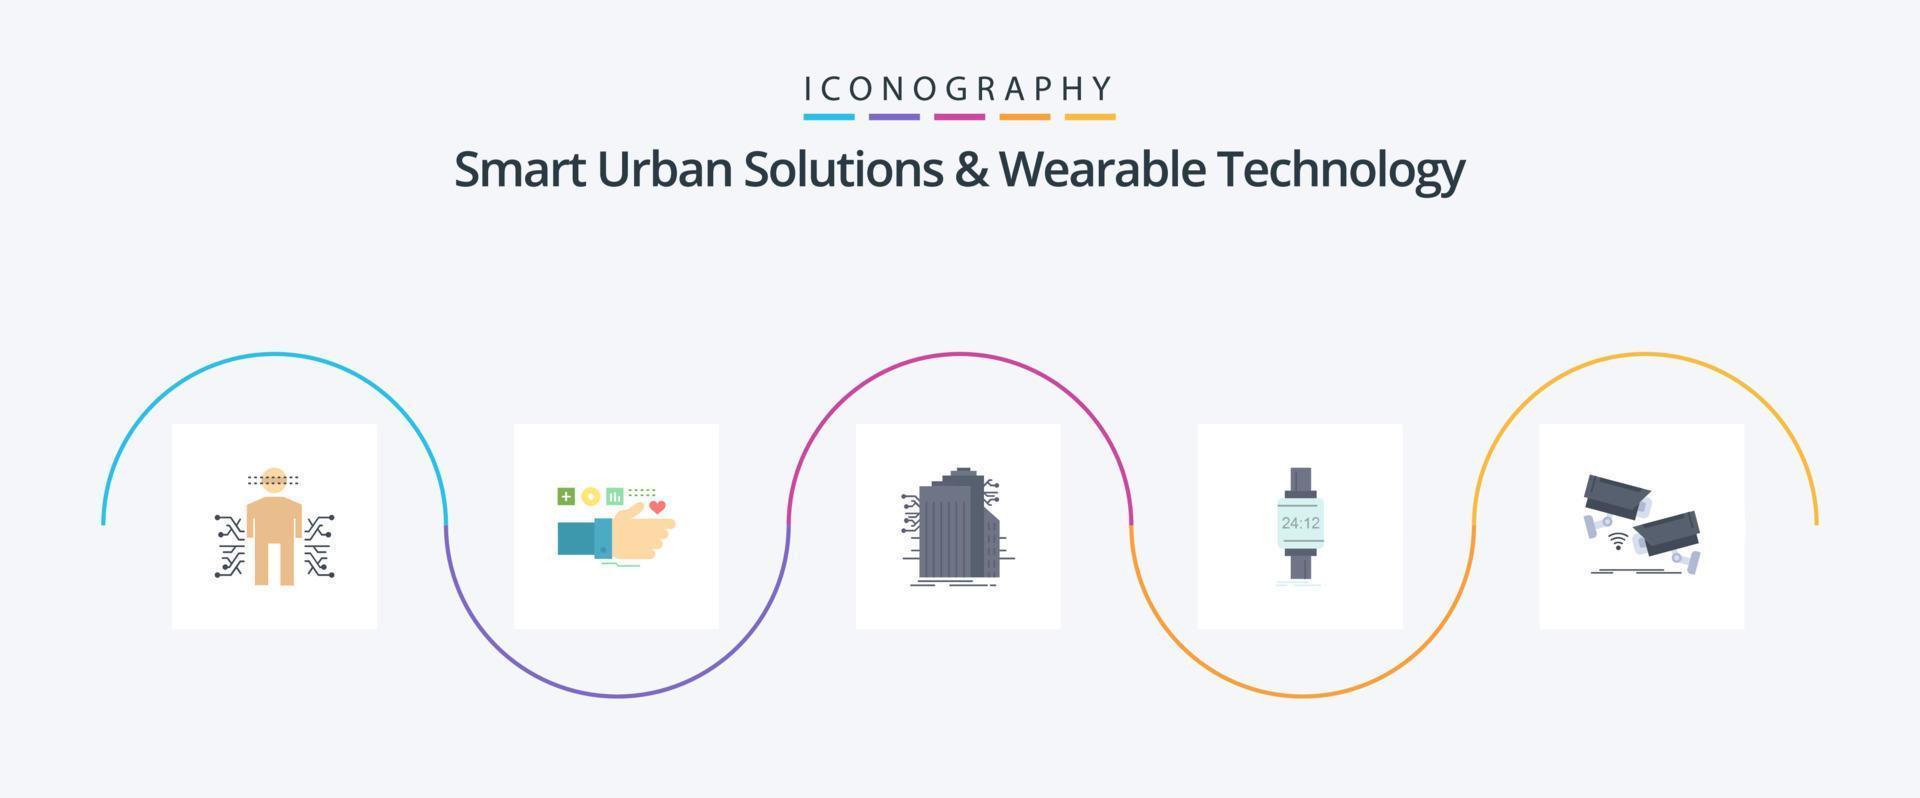 inteligente urbano soluciones y usable tecnología plano 5 5 icono paquete incluso mirar. inteligente mirar. corazón. Internet. inteligente ciudad vector